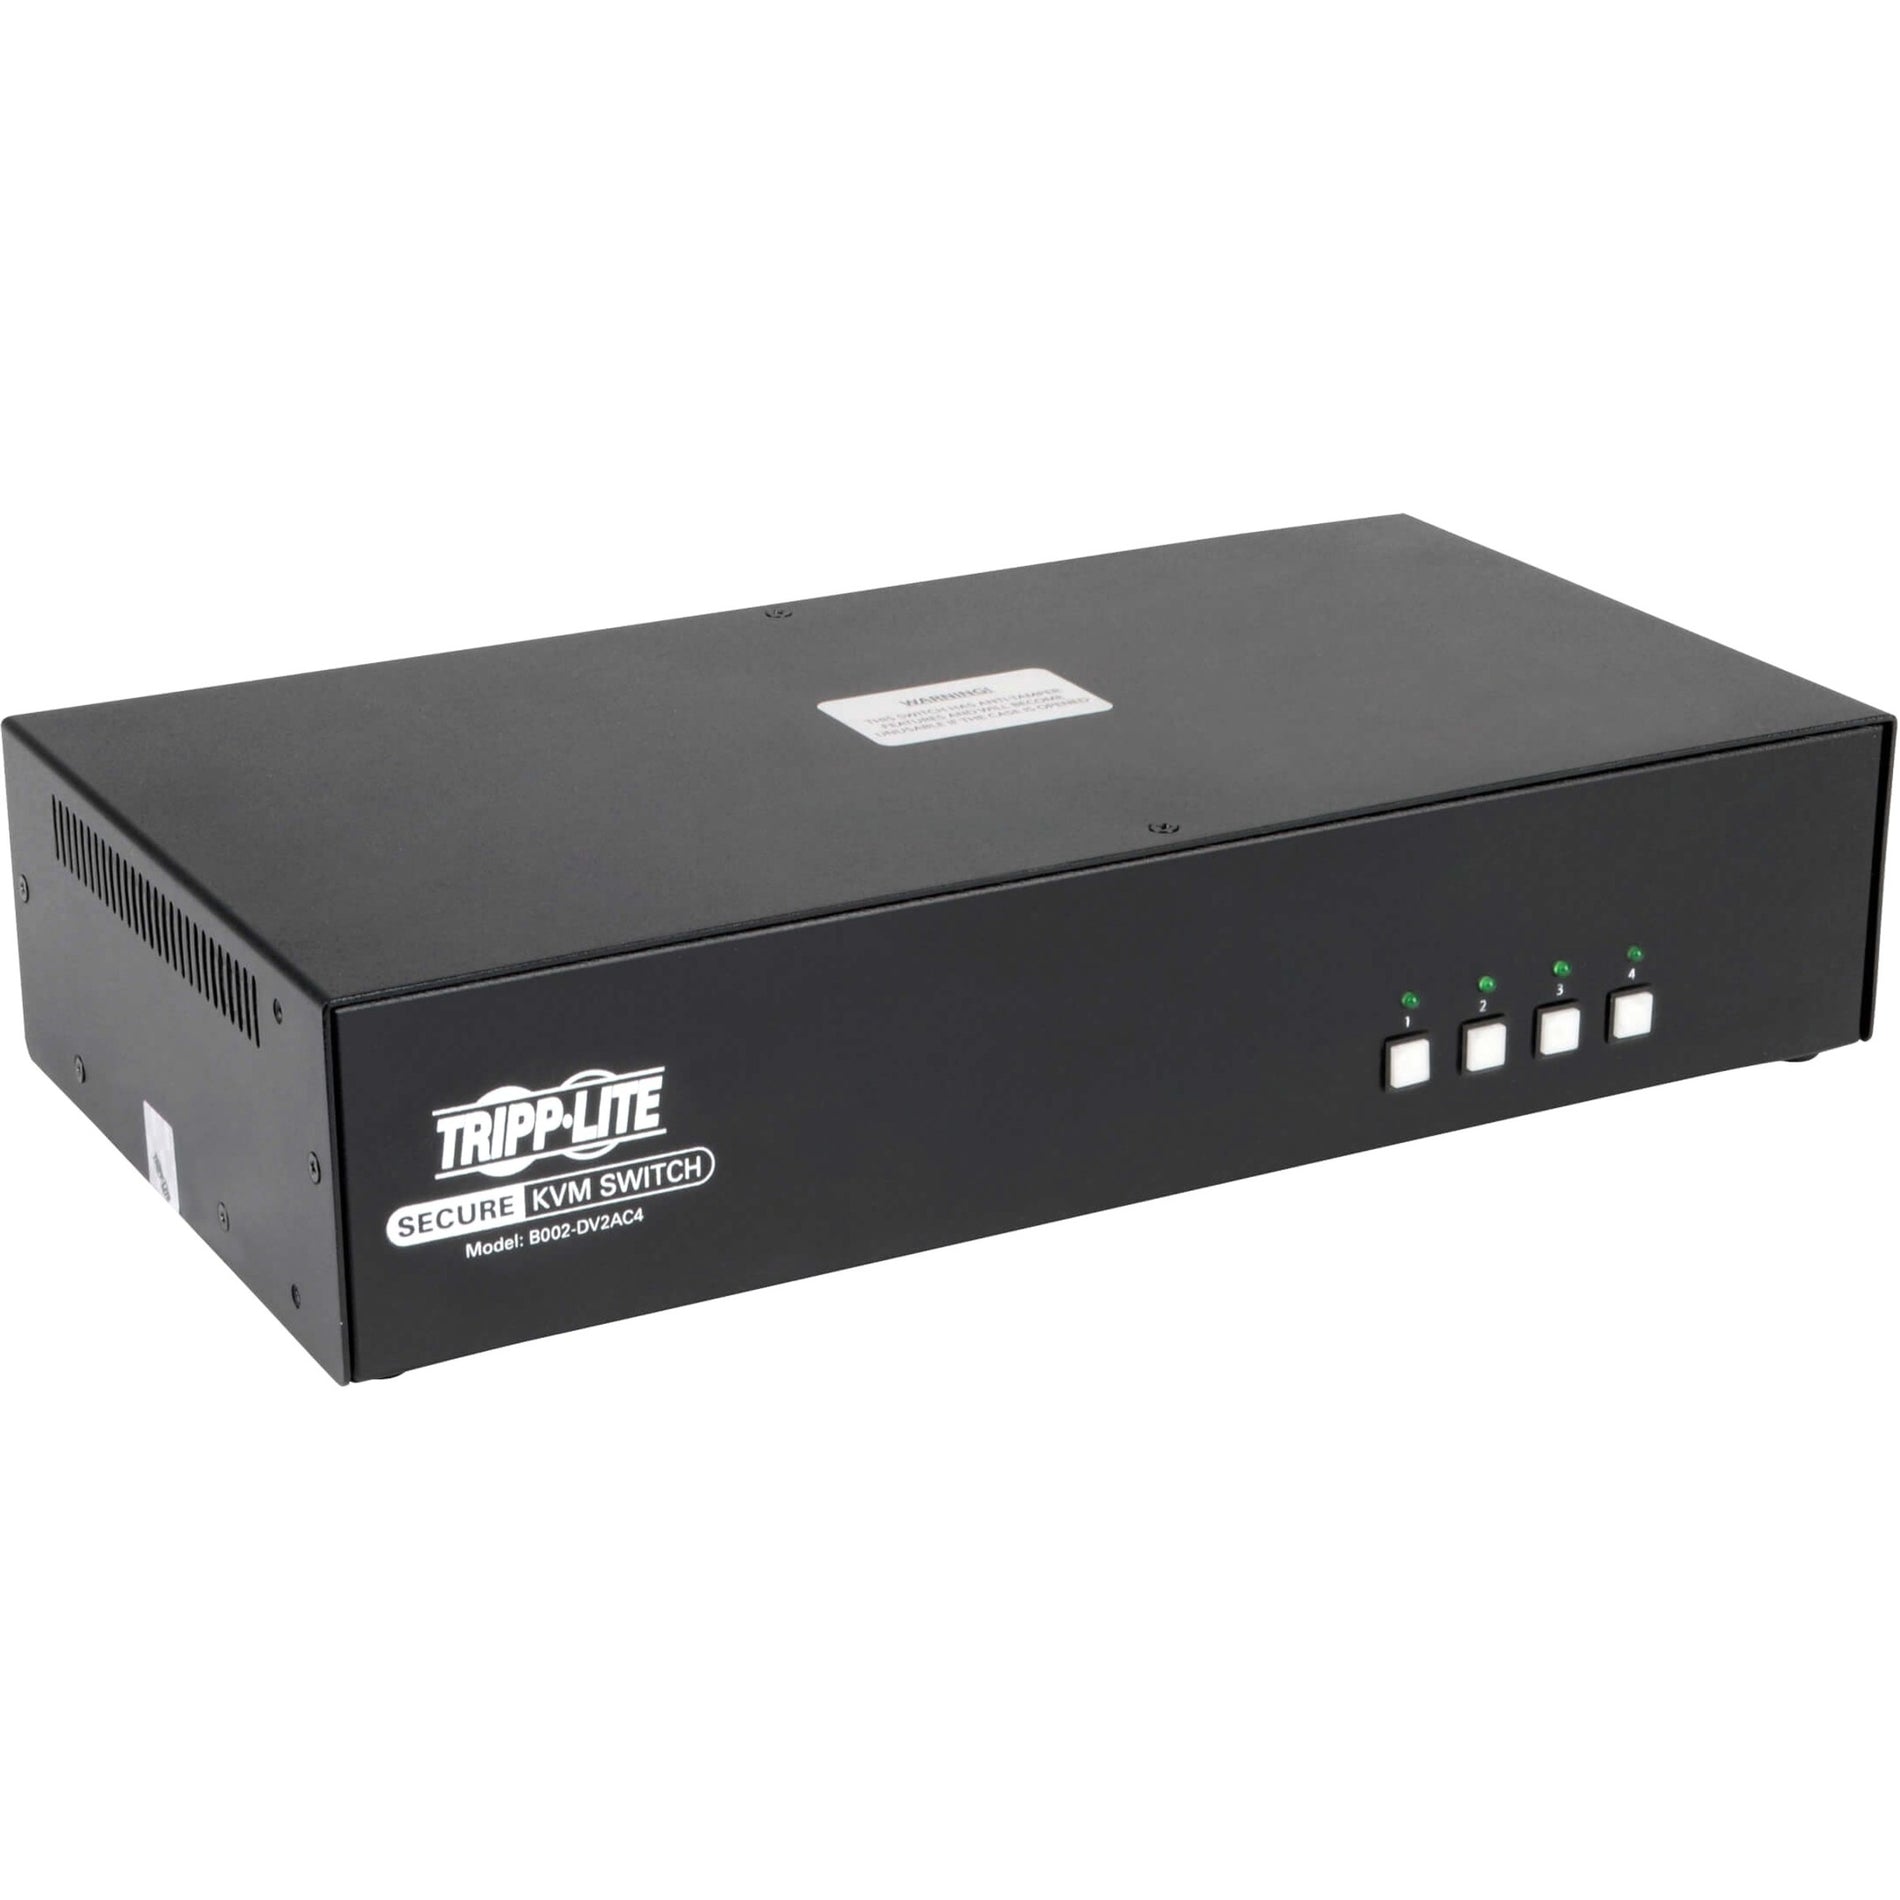 Tripp Lite B002-DV2AC4 4-Port NIAP PP3.0-Certified DVI-I KVM Switch Maximum Video Resolution 2560 x 1600 3 Year Warranty トリップライト B002-DV2AC4 4ポート NIAP PP3.0 認定 DVI-I KVM スイッチ、最大ビデオ解像度 2560 x 1600、3年保証